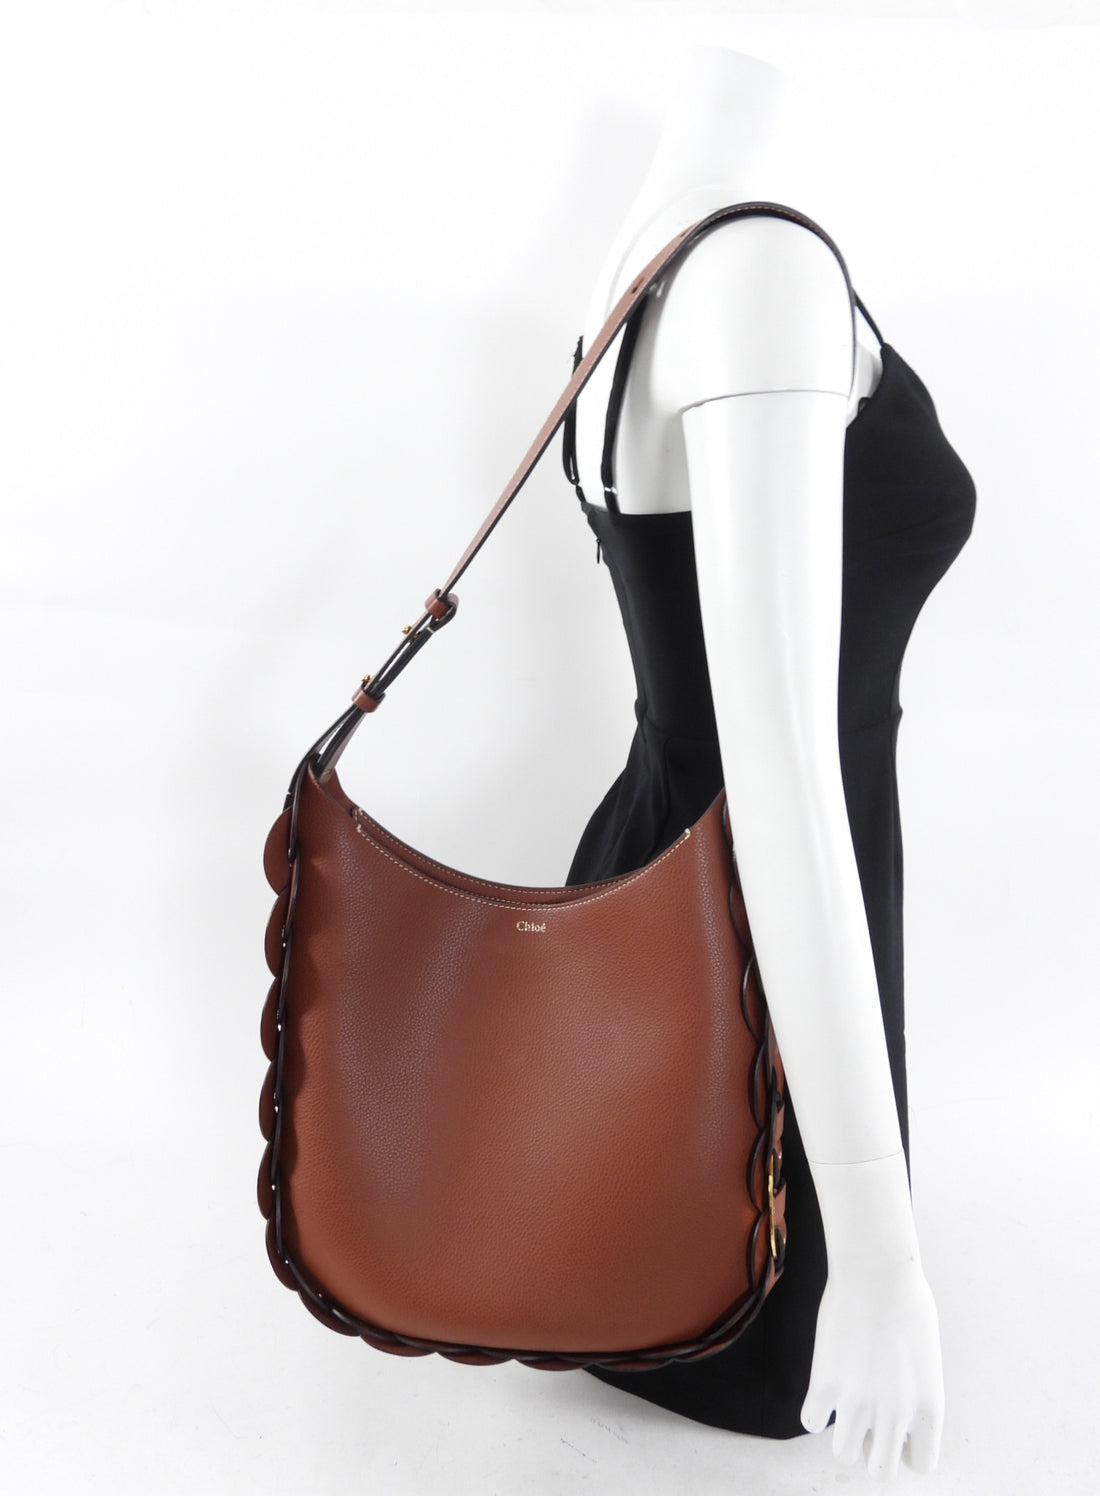 Chloe Brown Leather Darryl Medium Hobo Bag